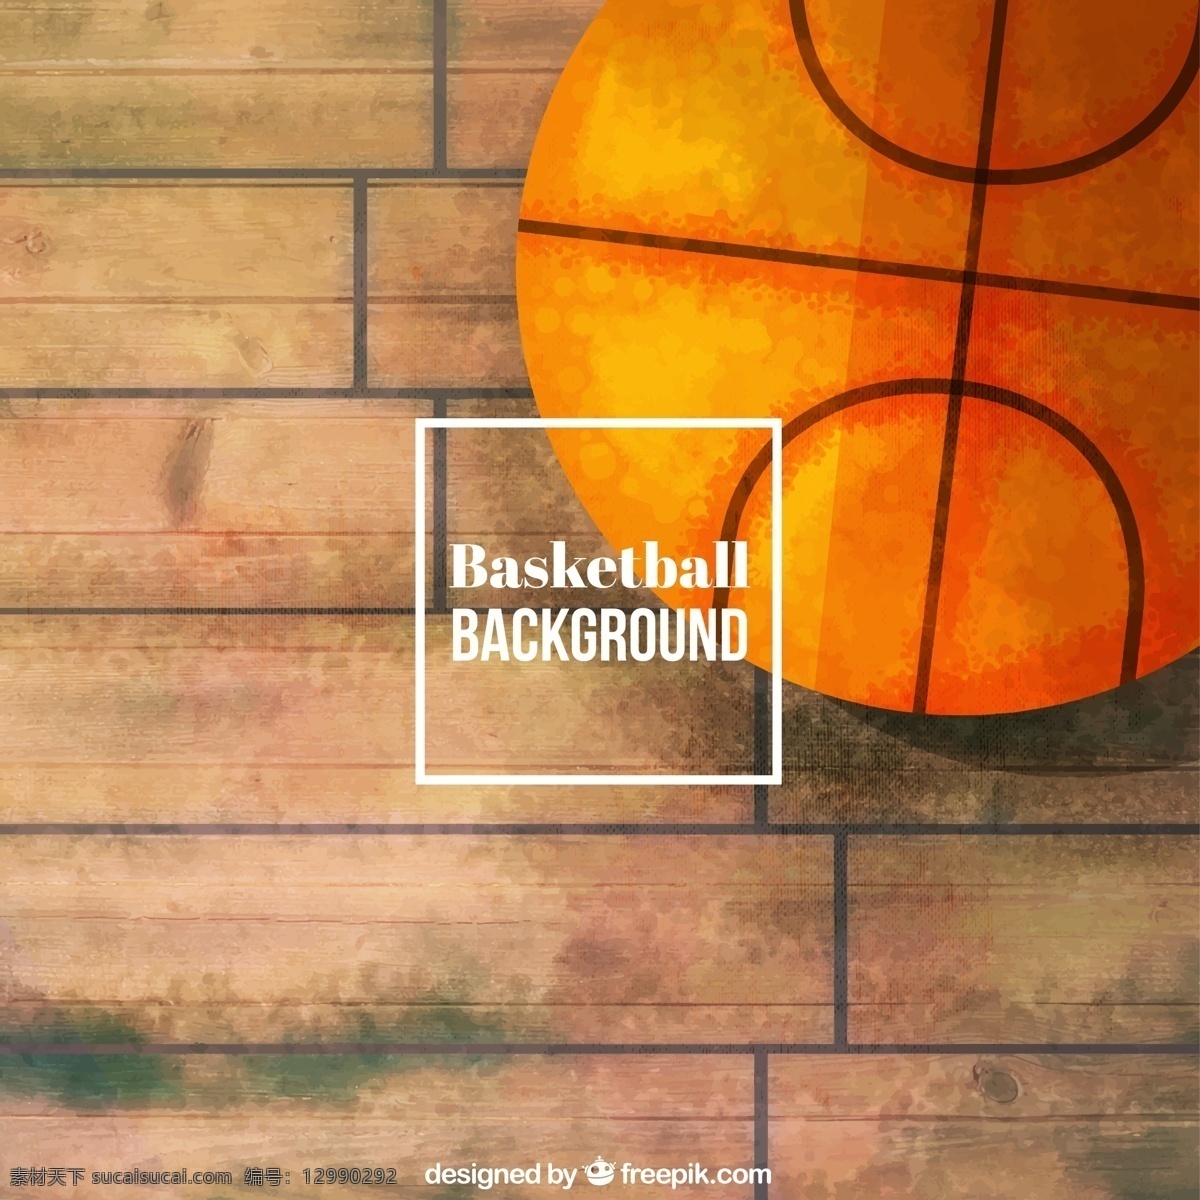 彩绘 地板 上 篮球 矢量 背景 底纹 蓝球 木板 时尚 运动